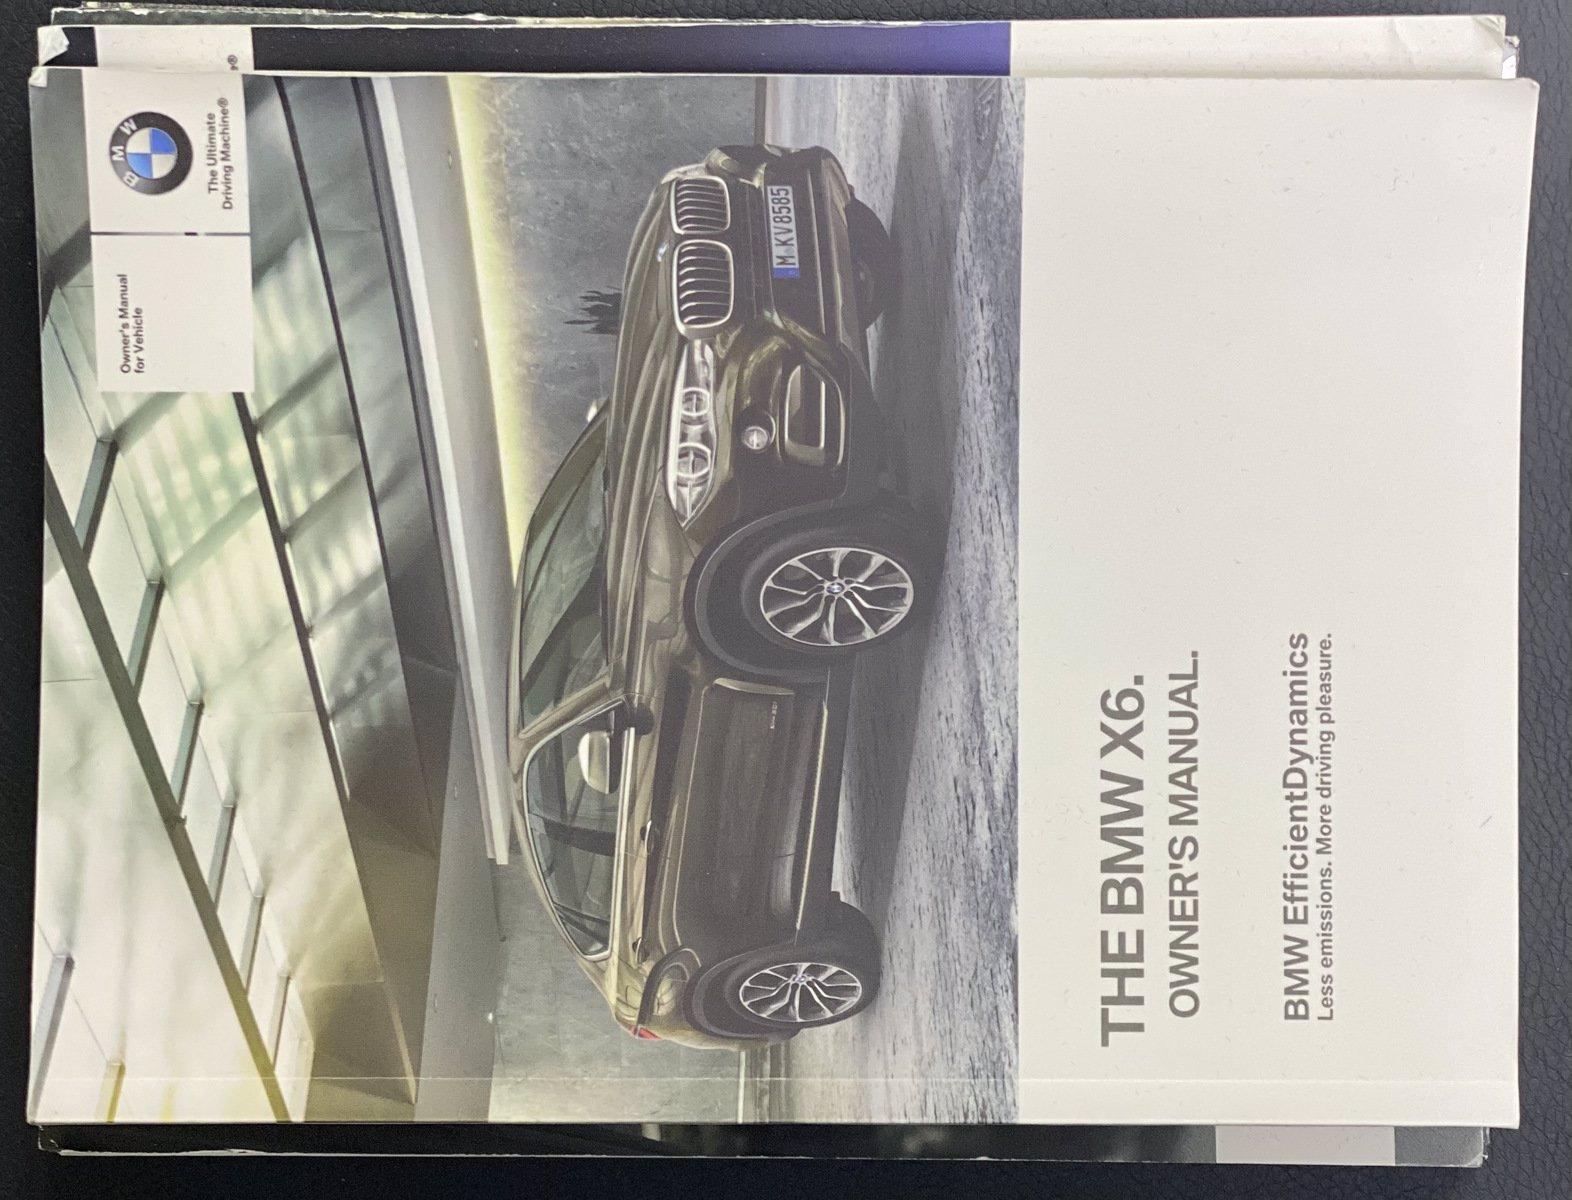 Used 2018 BMW X6 xDrive35i M-Sport | Downers Grove, IL